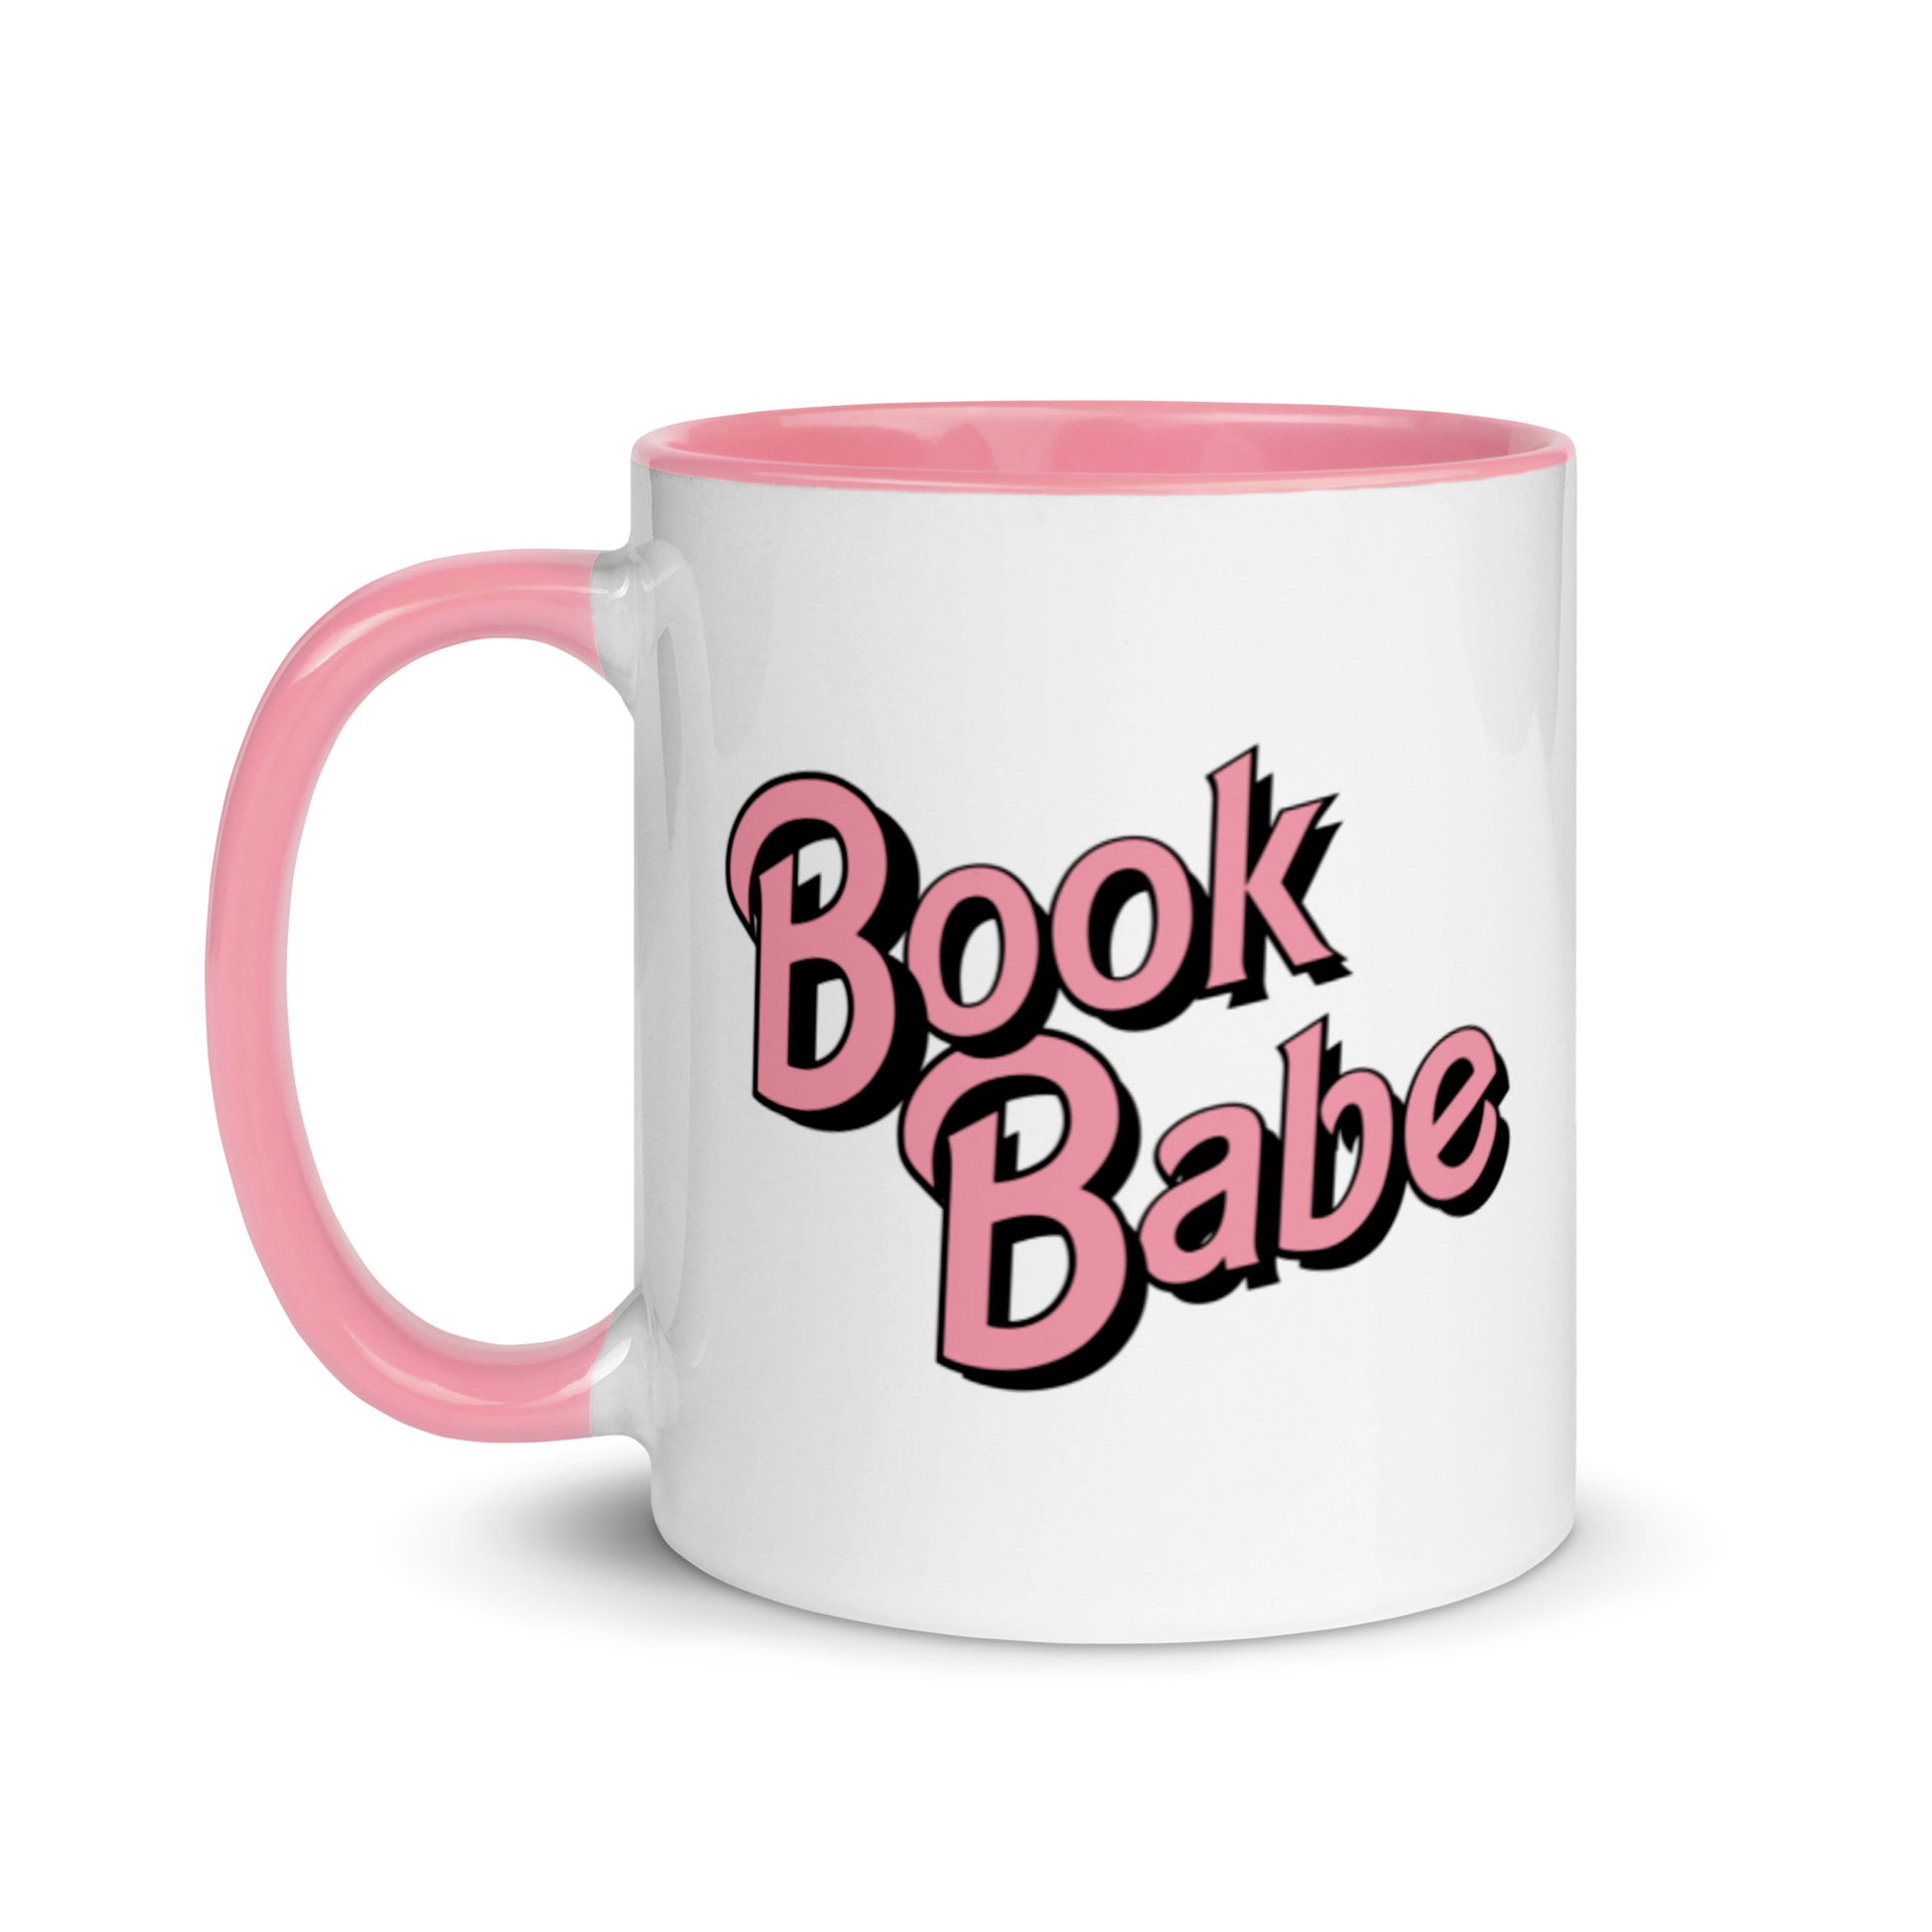 Book babe mug